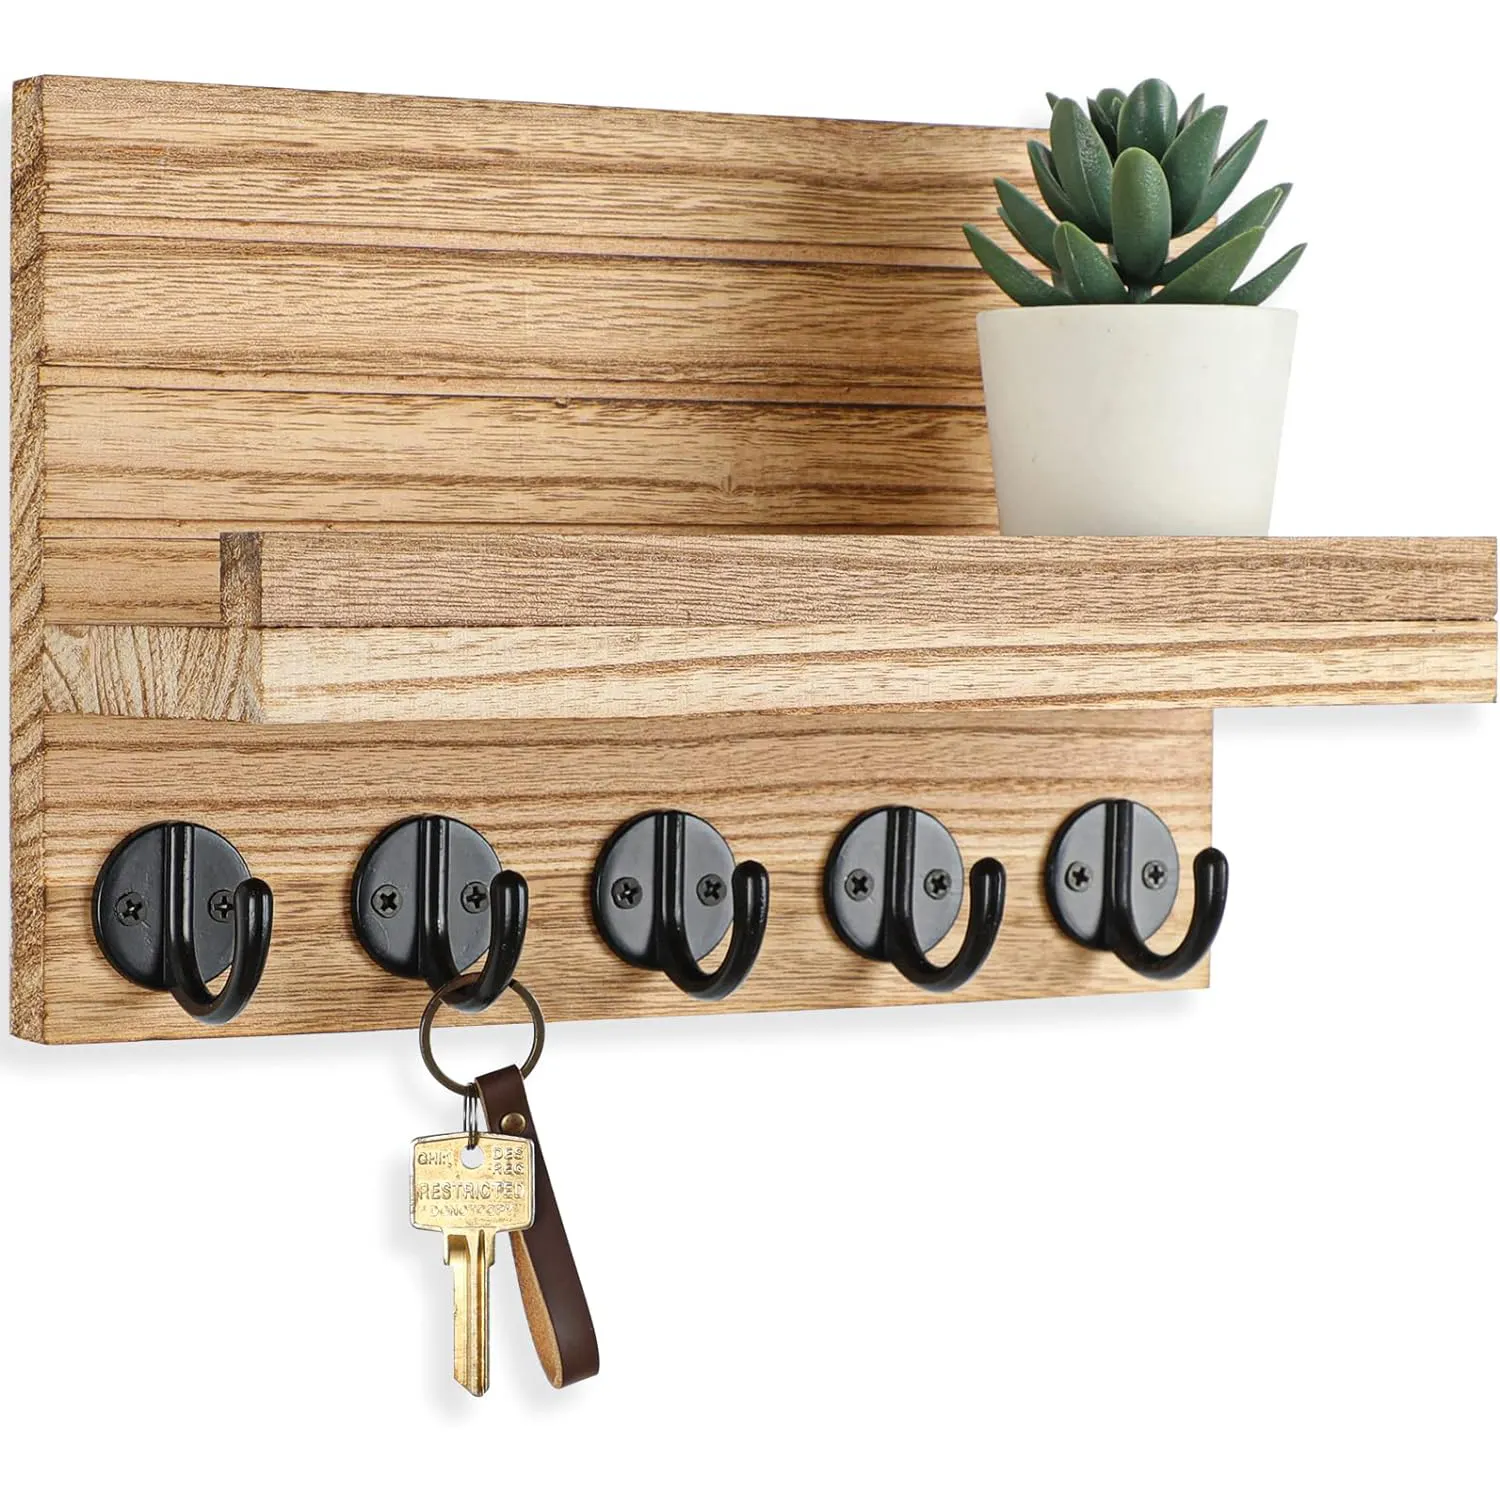 चाबियों और मेल के लिए लकड़ी की दीवार ट्रिम, बड़े चाबी हुक के साथ बैग, कोट, छाते लटकाया जा सकता है